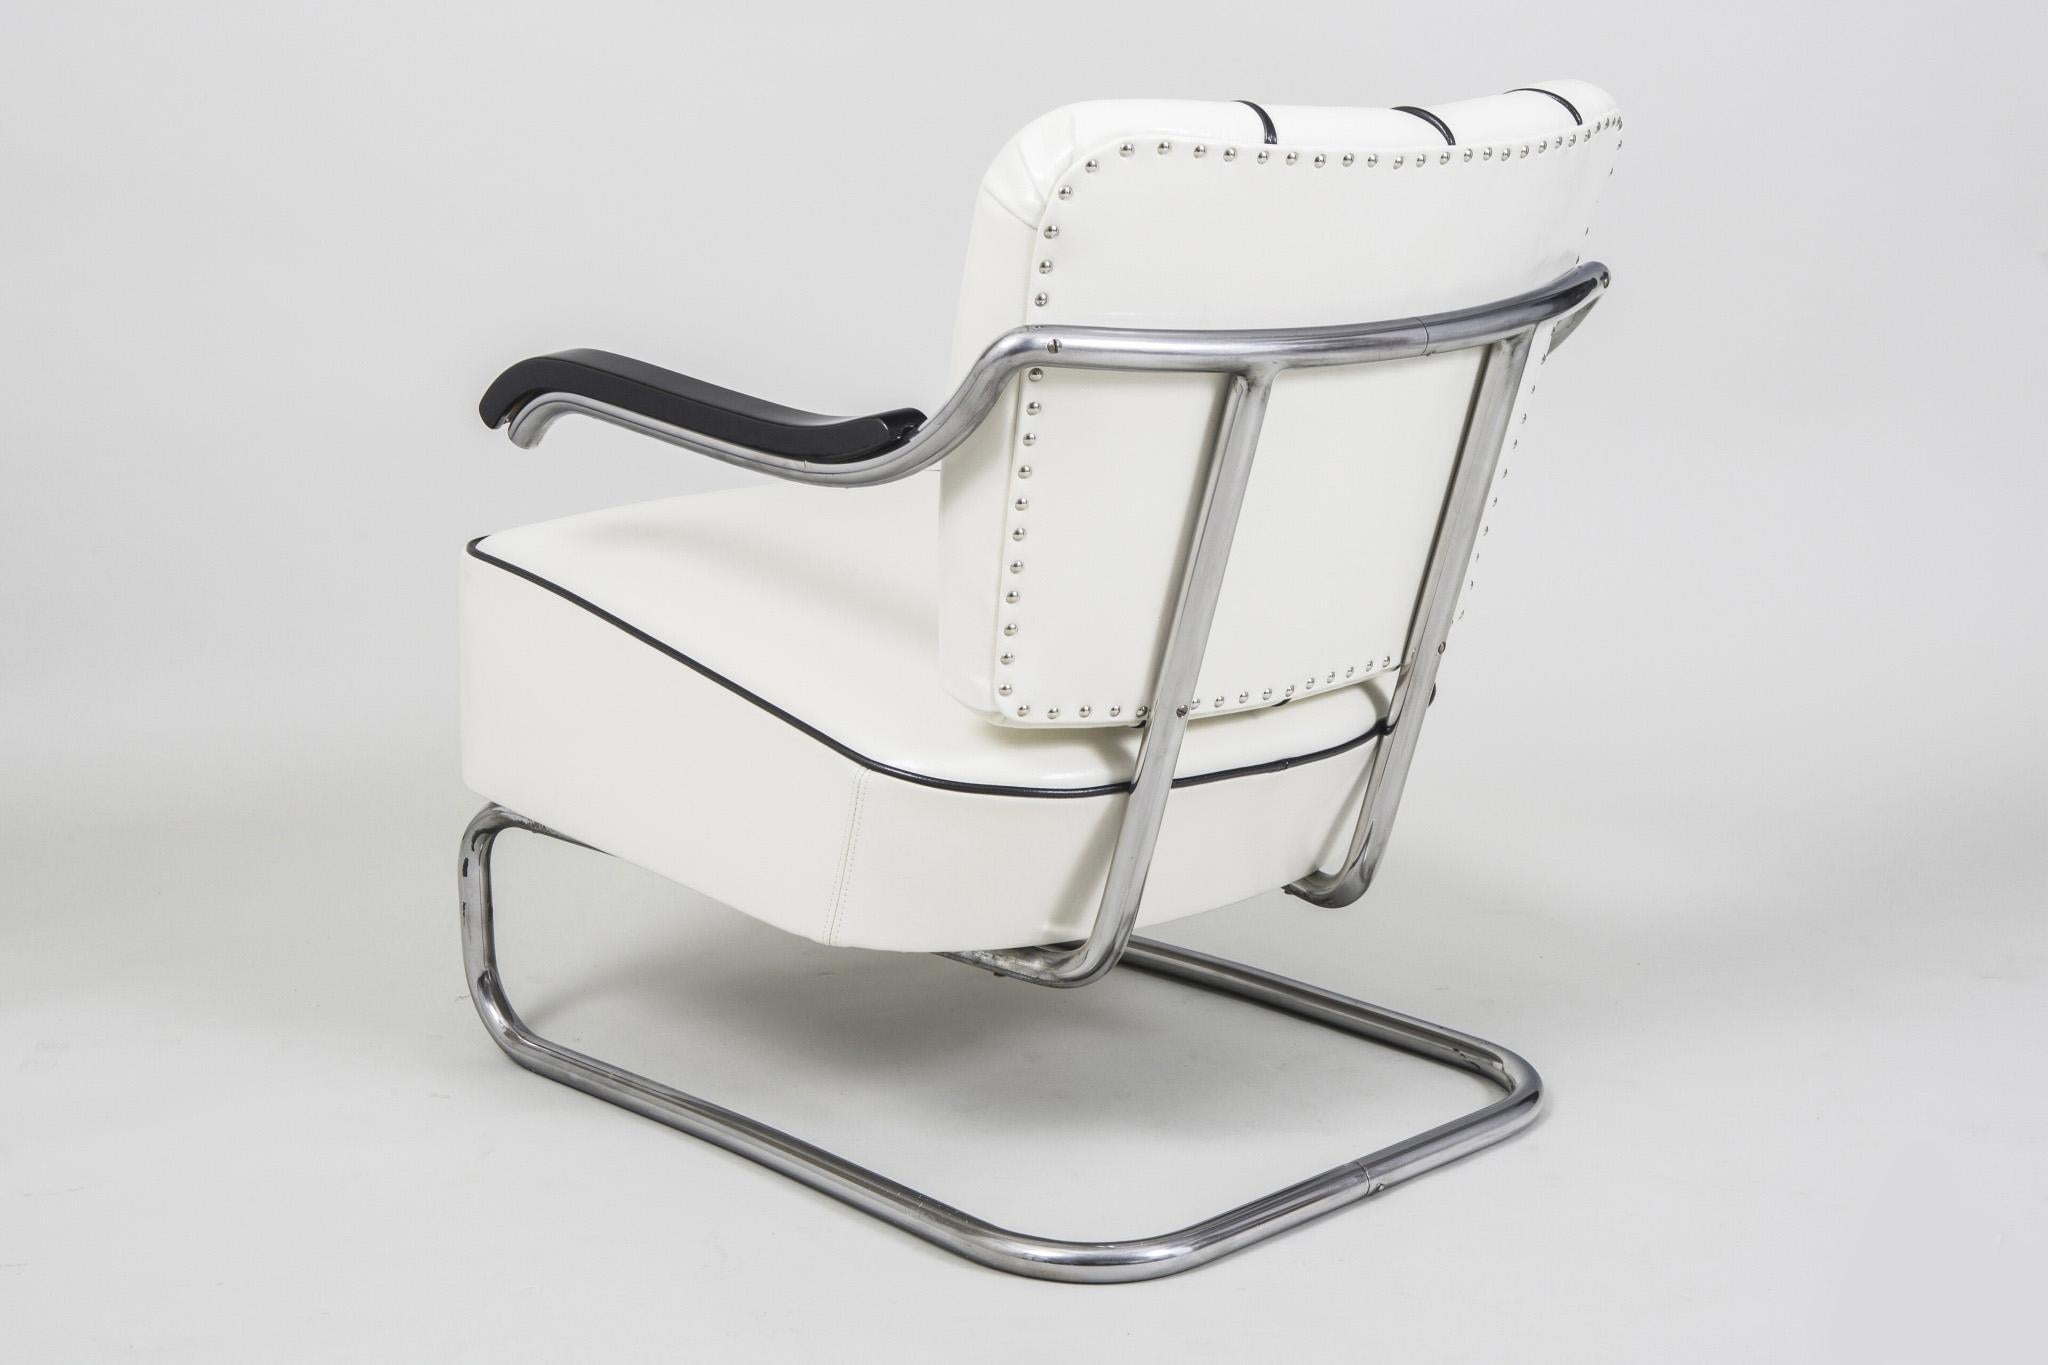 Tubular Chrom Cantilever Armchair by Mücke-Melder, White Leather, New Upholstery 1